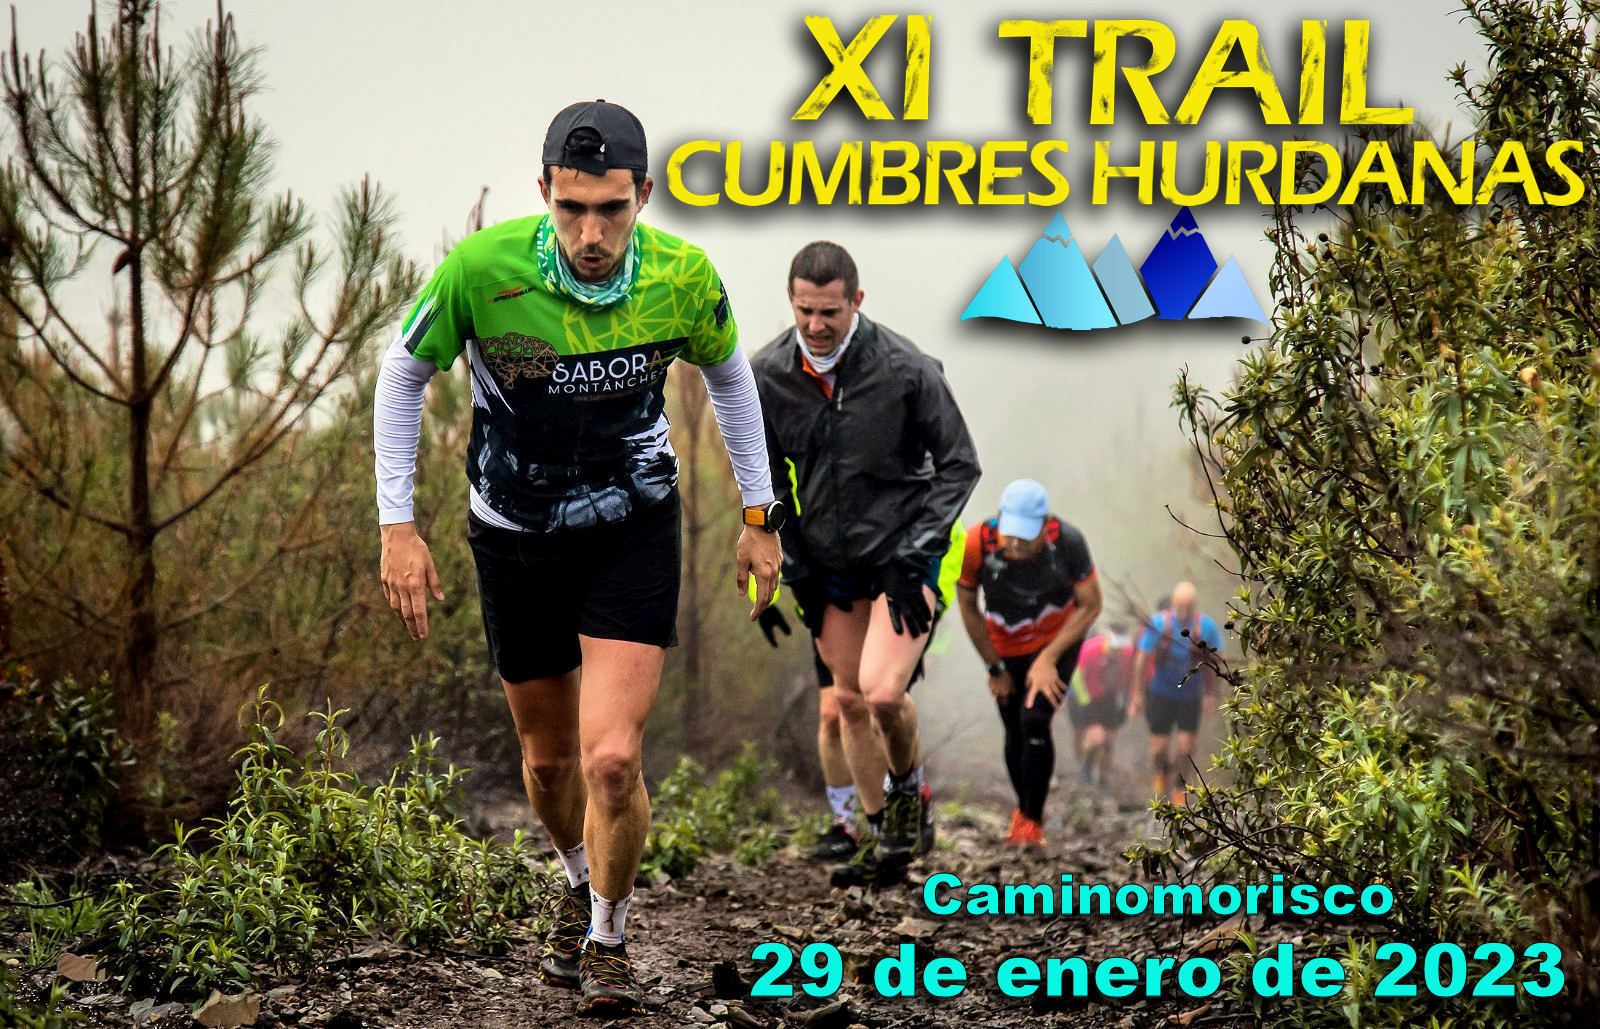 XI Trail Cumbres Hurdanas, el 29 de enero en Caminomorisco (Las Hurdes)